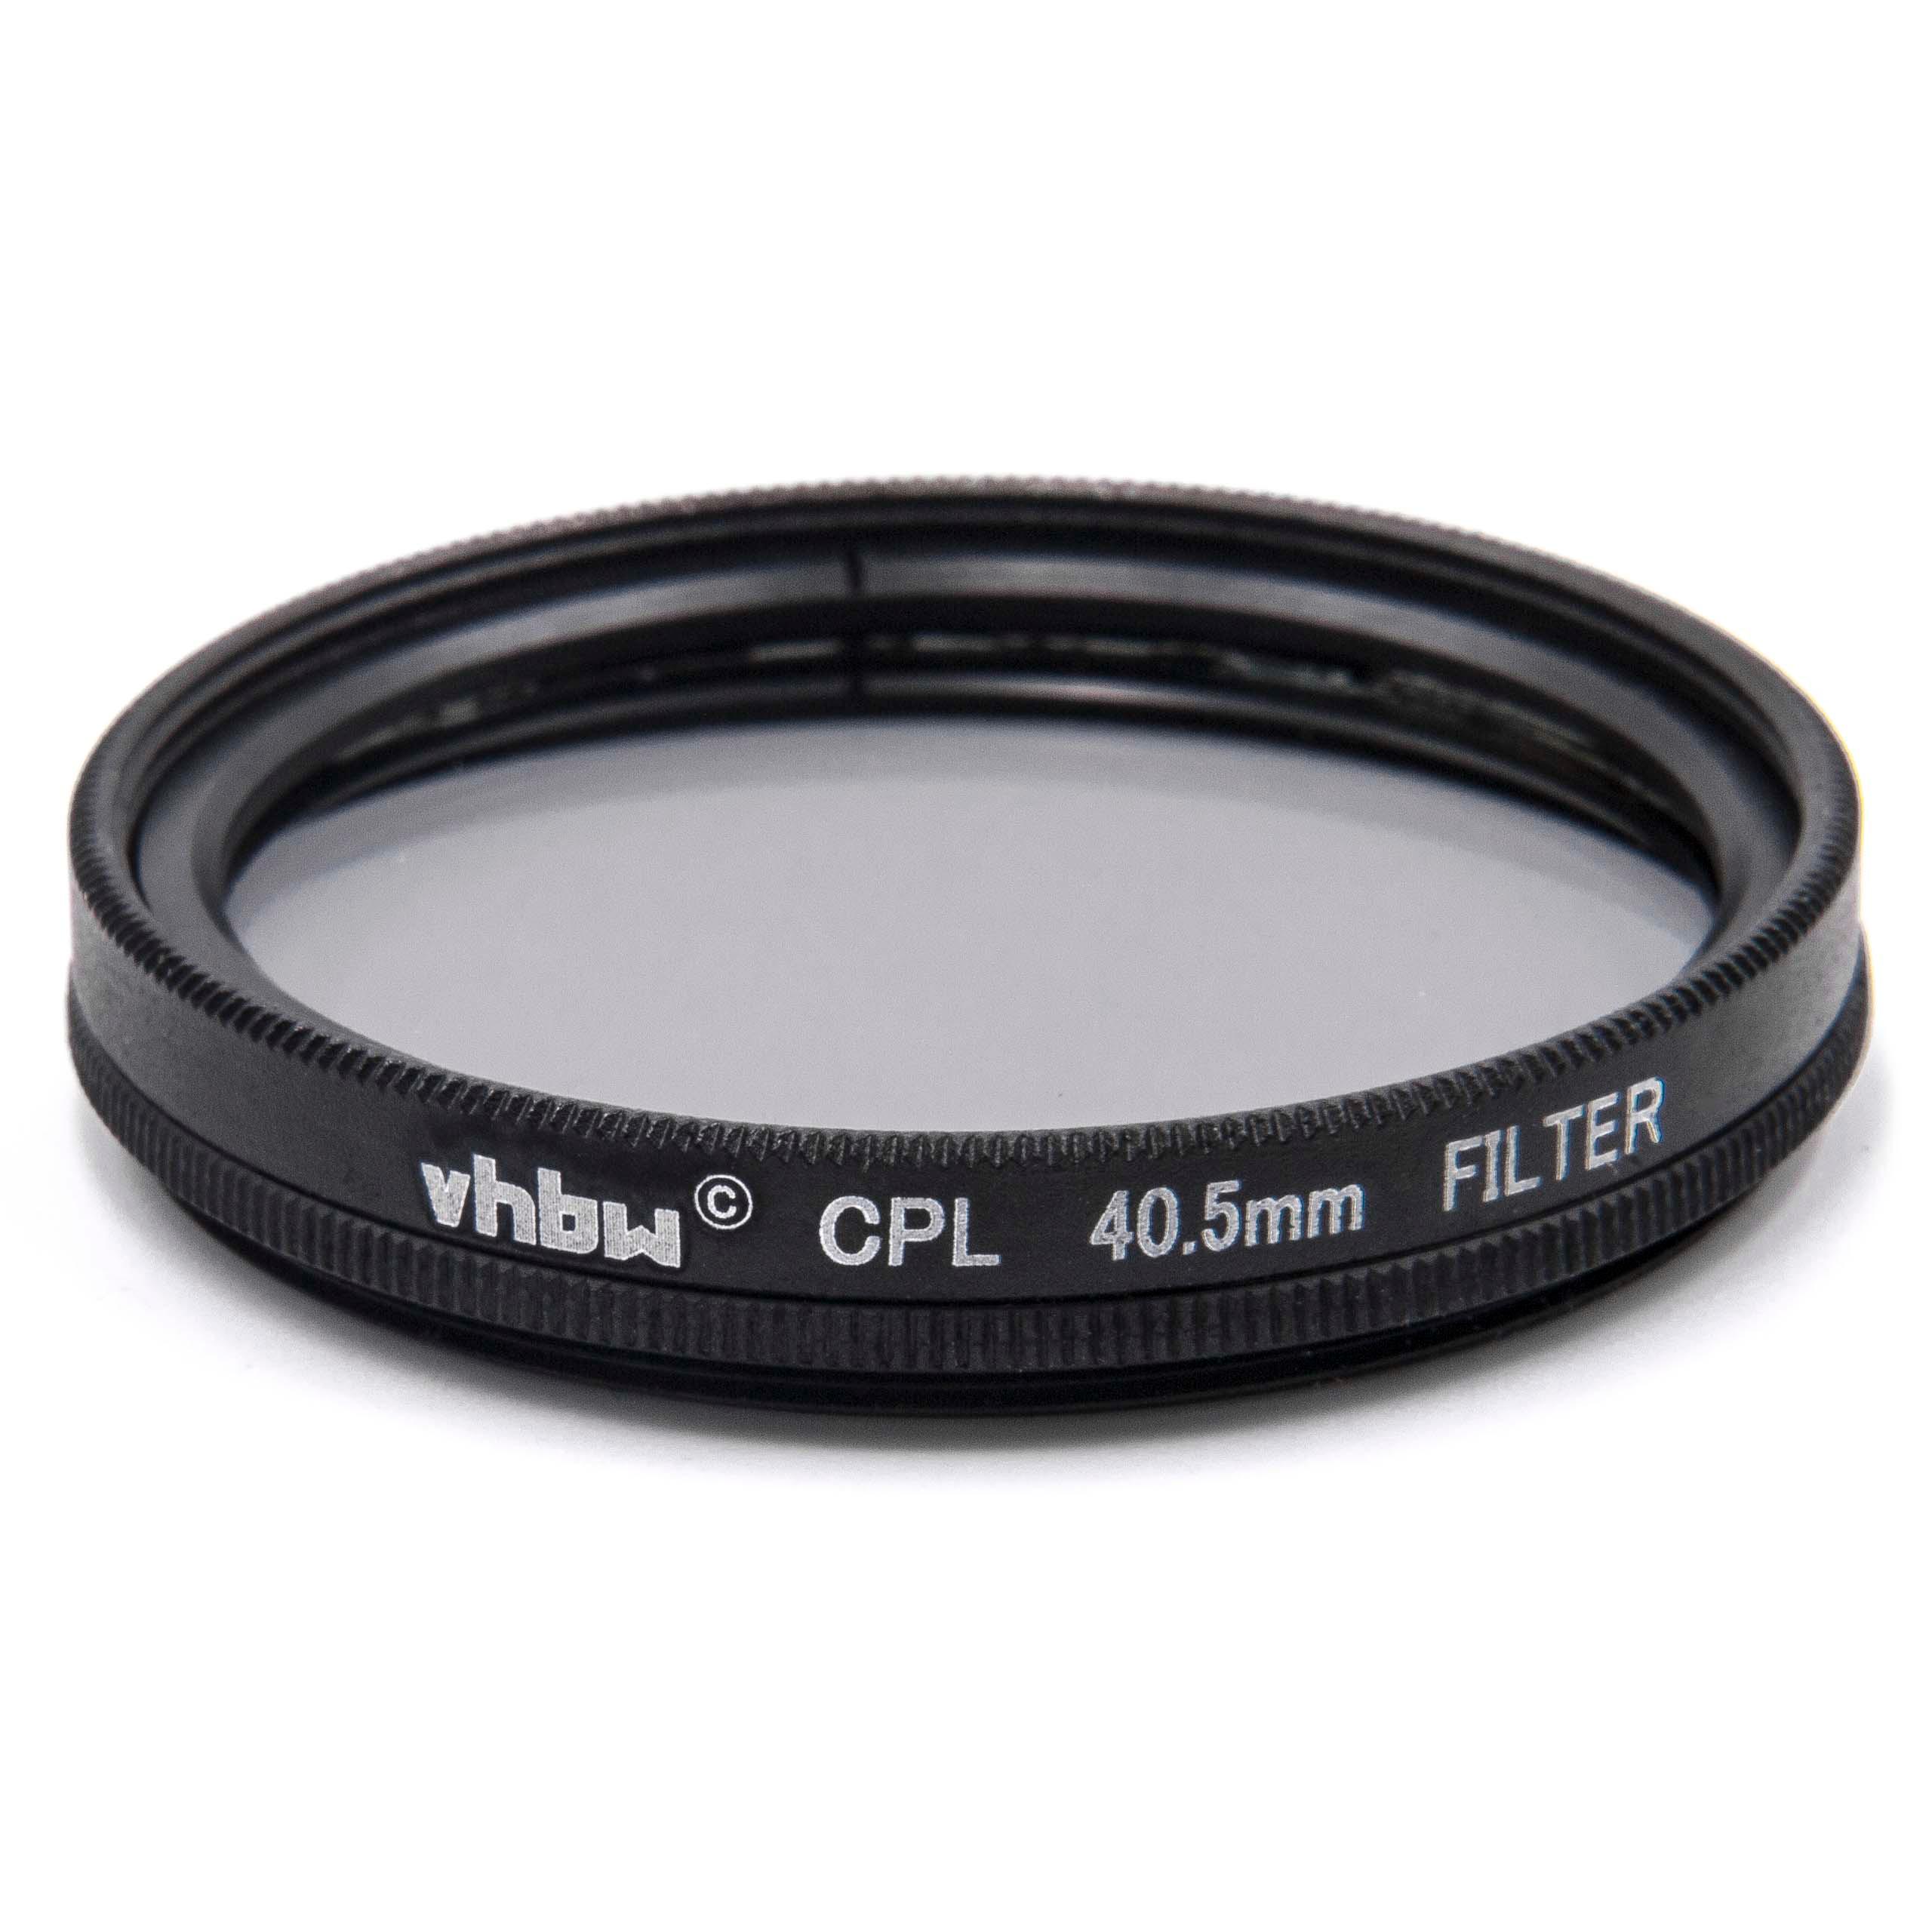 Filtre polarisant pour appareil photo et objectif de diamètre 40,5 mm - Filtre CPL